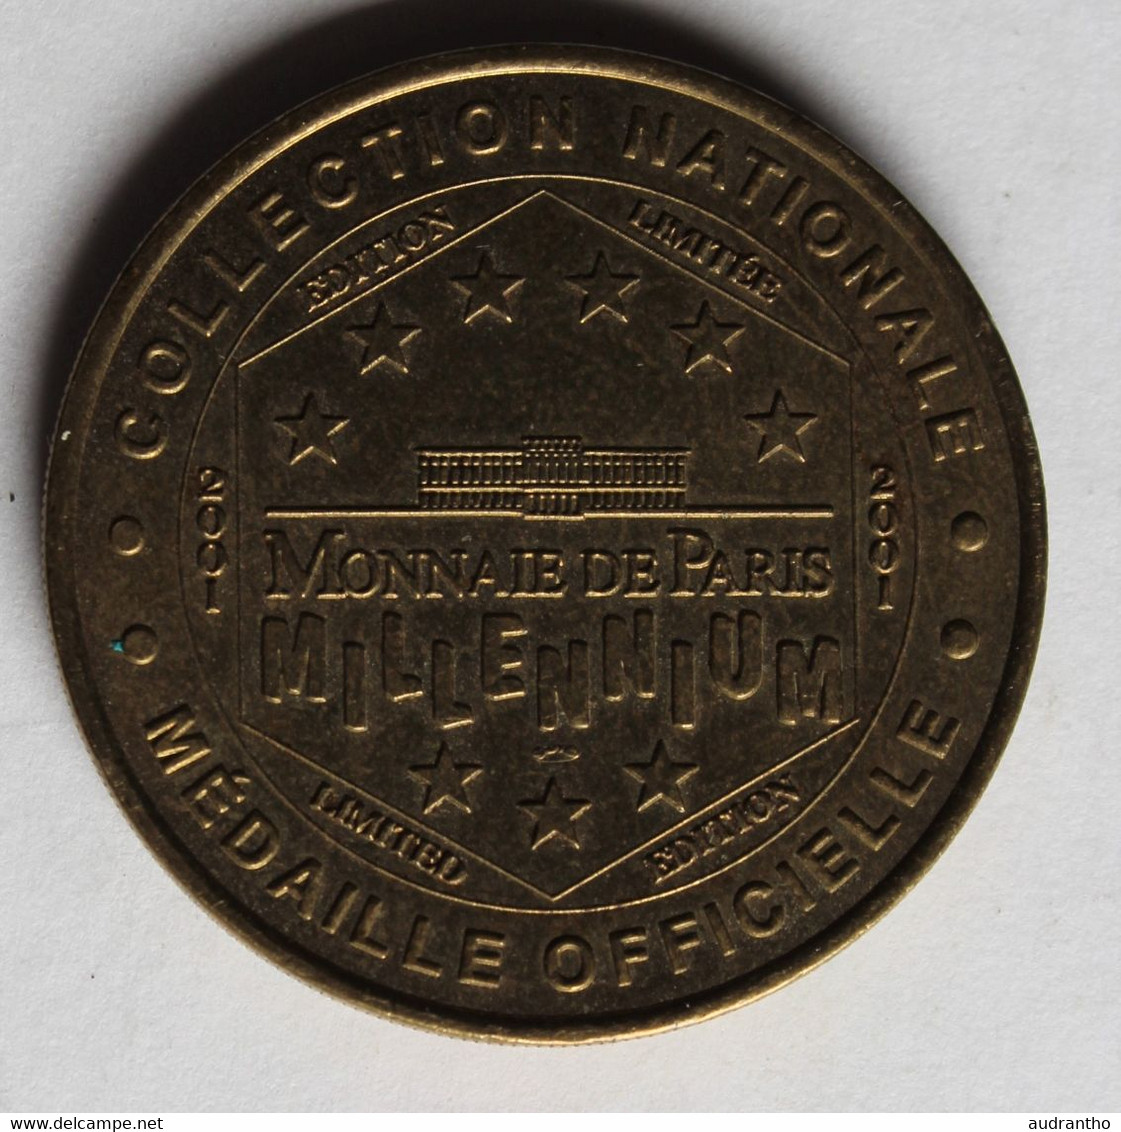 Médaille Officielle Monnaie De Paris Collection Nationale 2001 Oradour Sur Glane Village Martyr Guerre WW2 - 2001